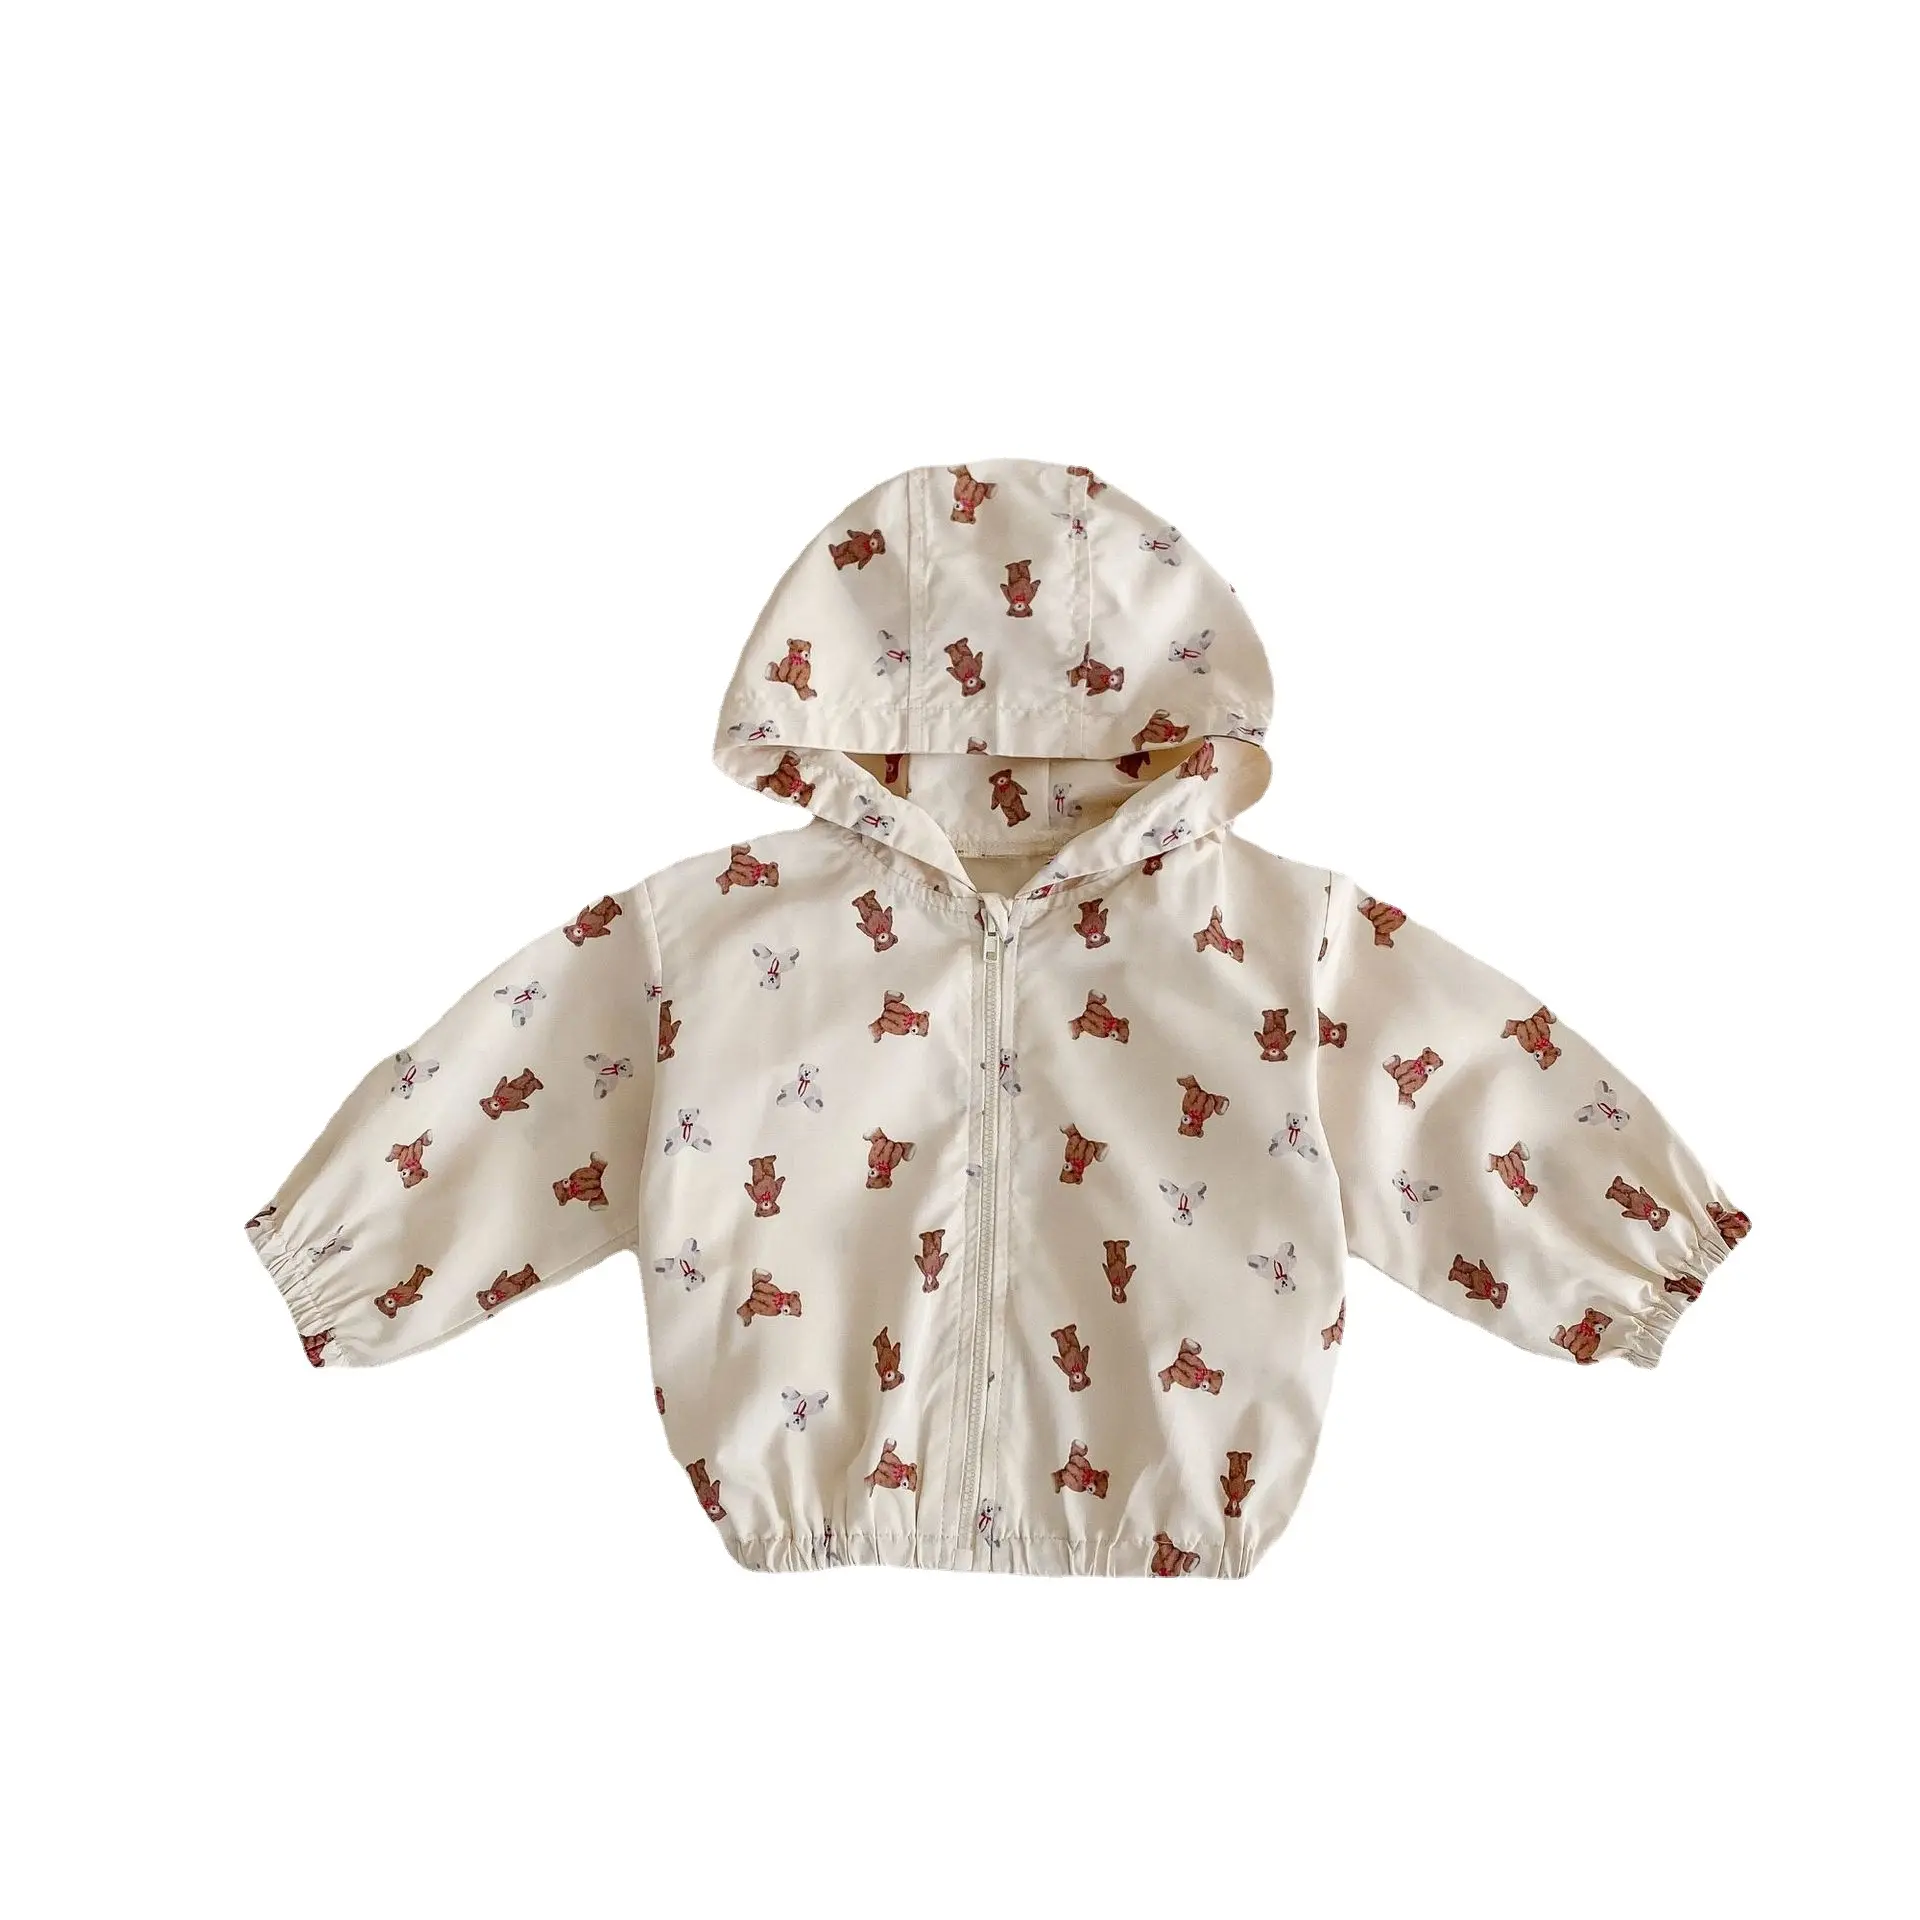 새로운 봄 여름 의류 아기 하트 모양의 작은 곰 인쇄 방풍 태양 방지 가디건 긴 소매 얇은 후드 코트